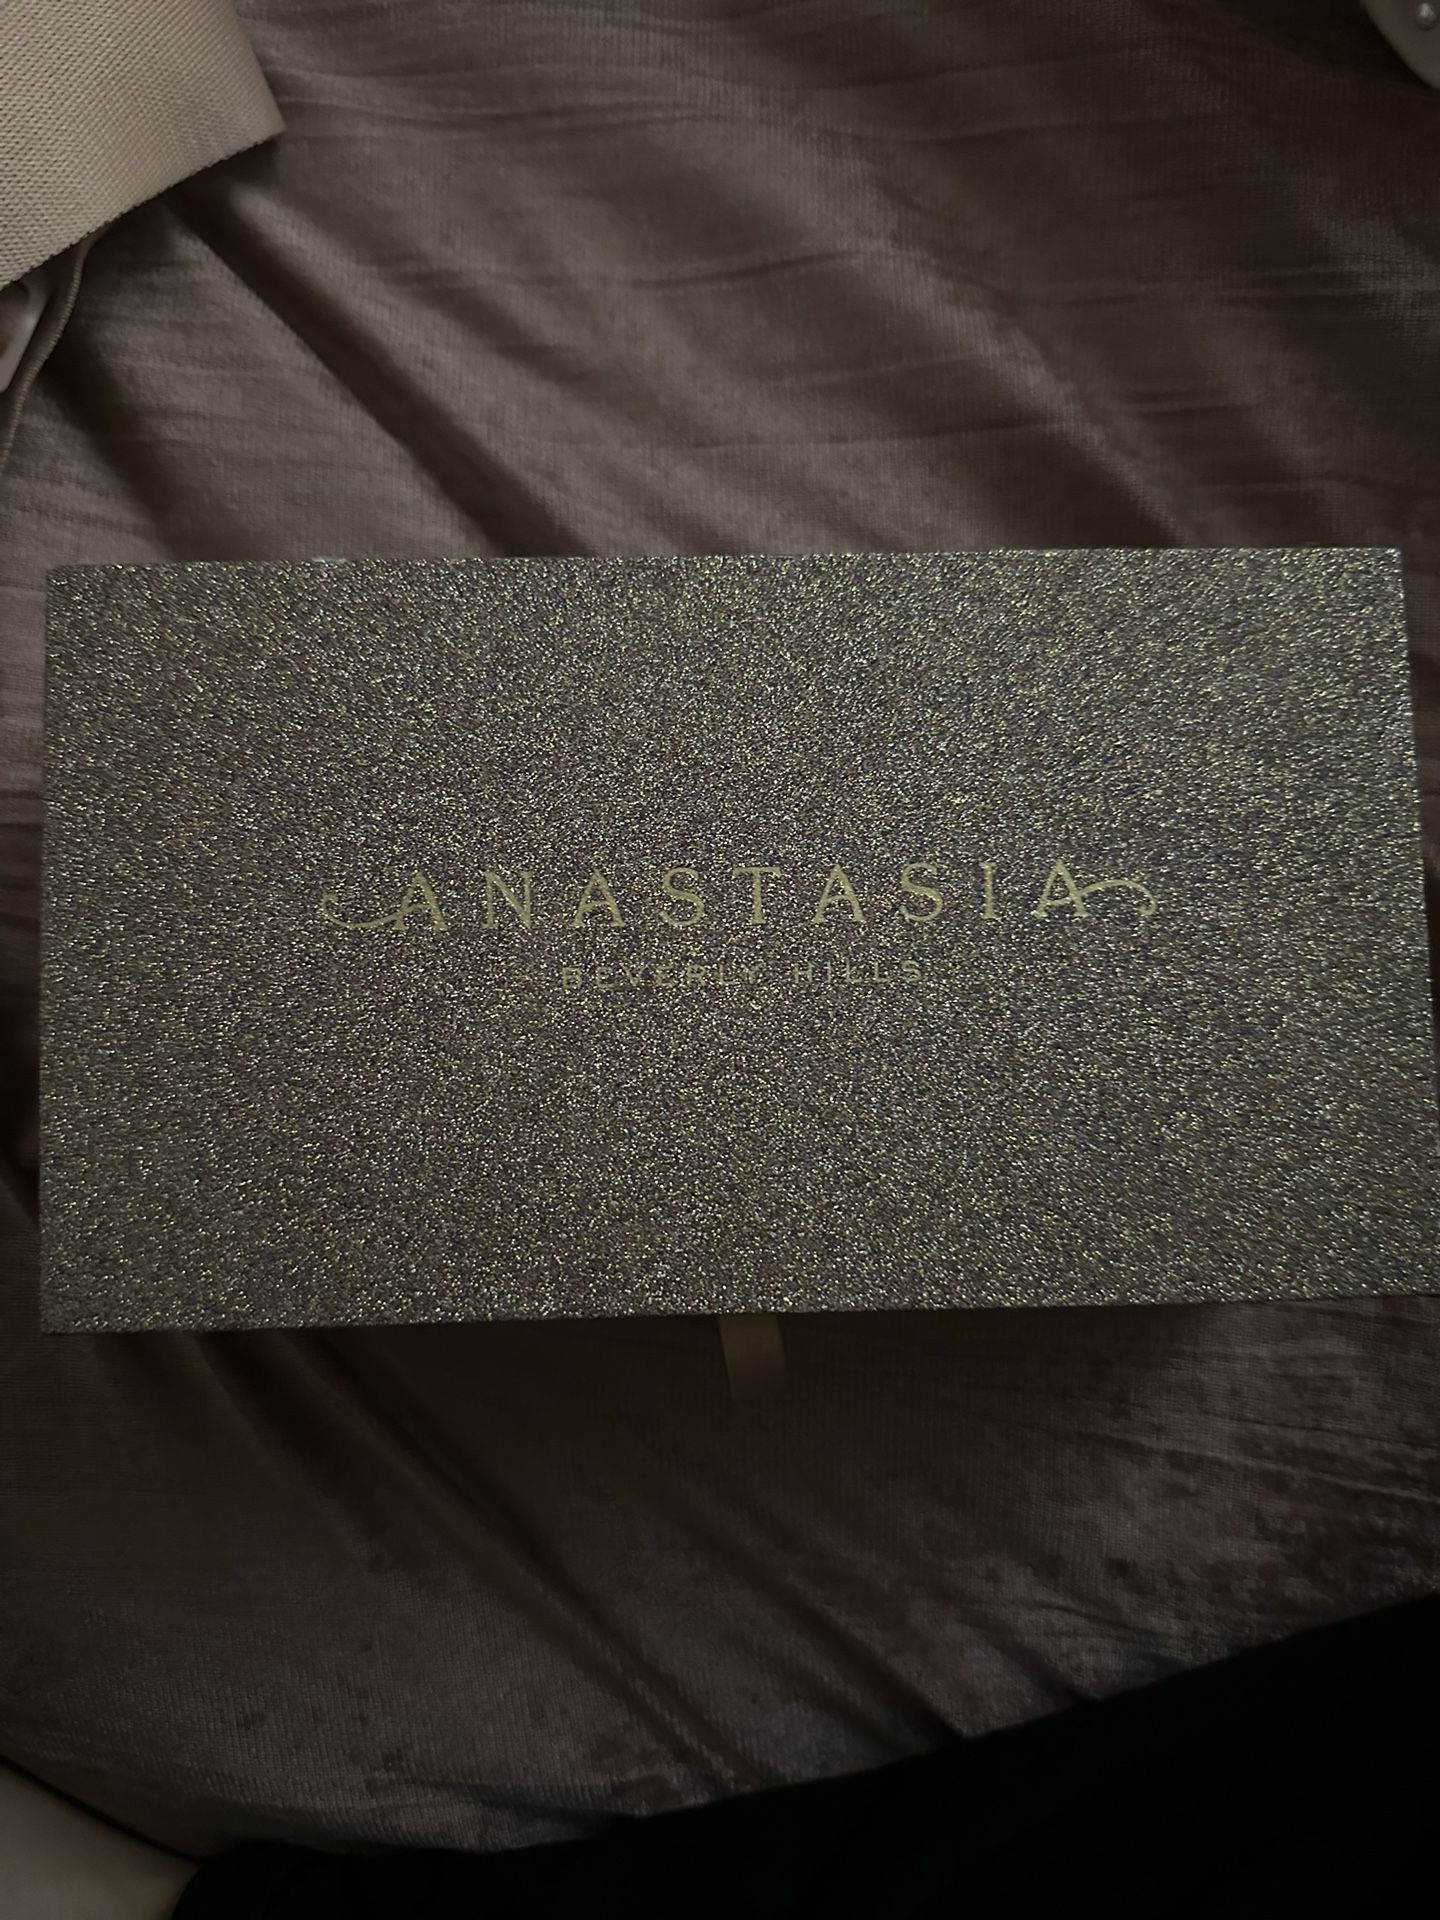 Anastasia Beverly Hills Box 